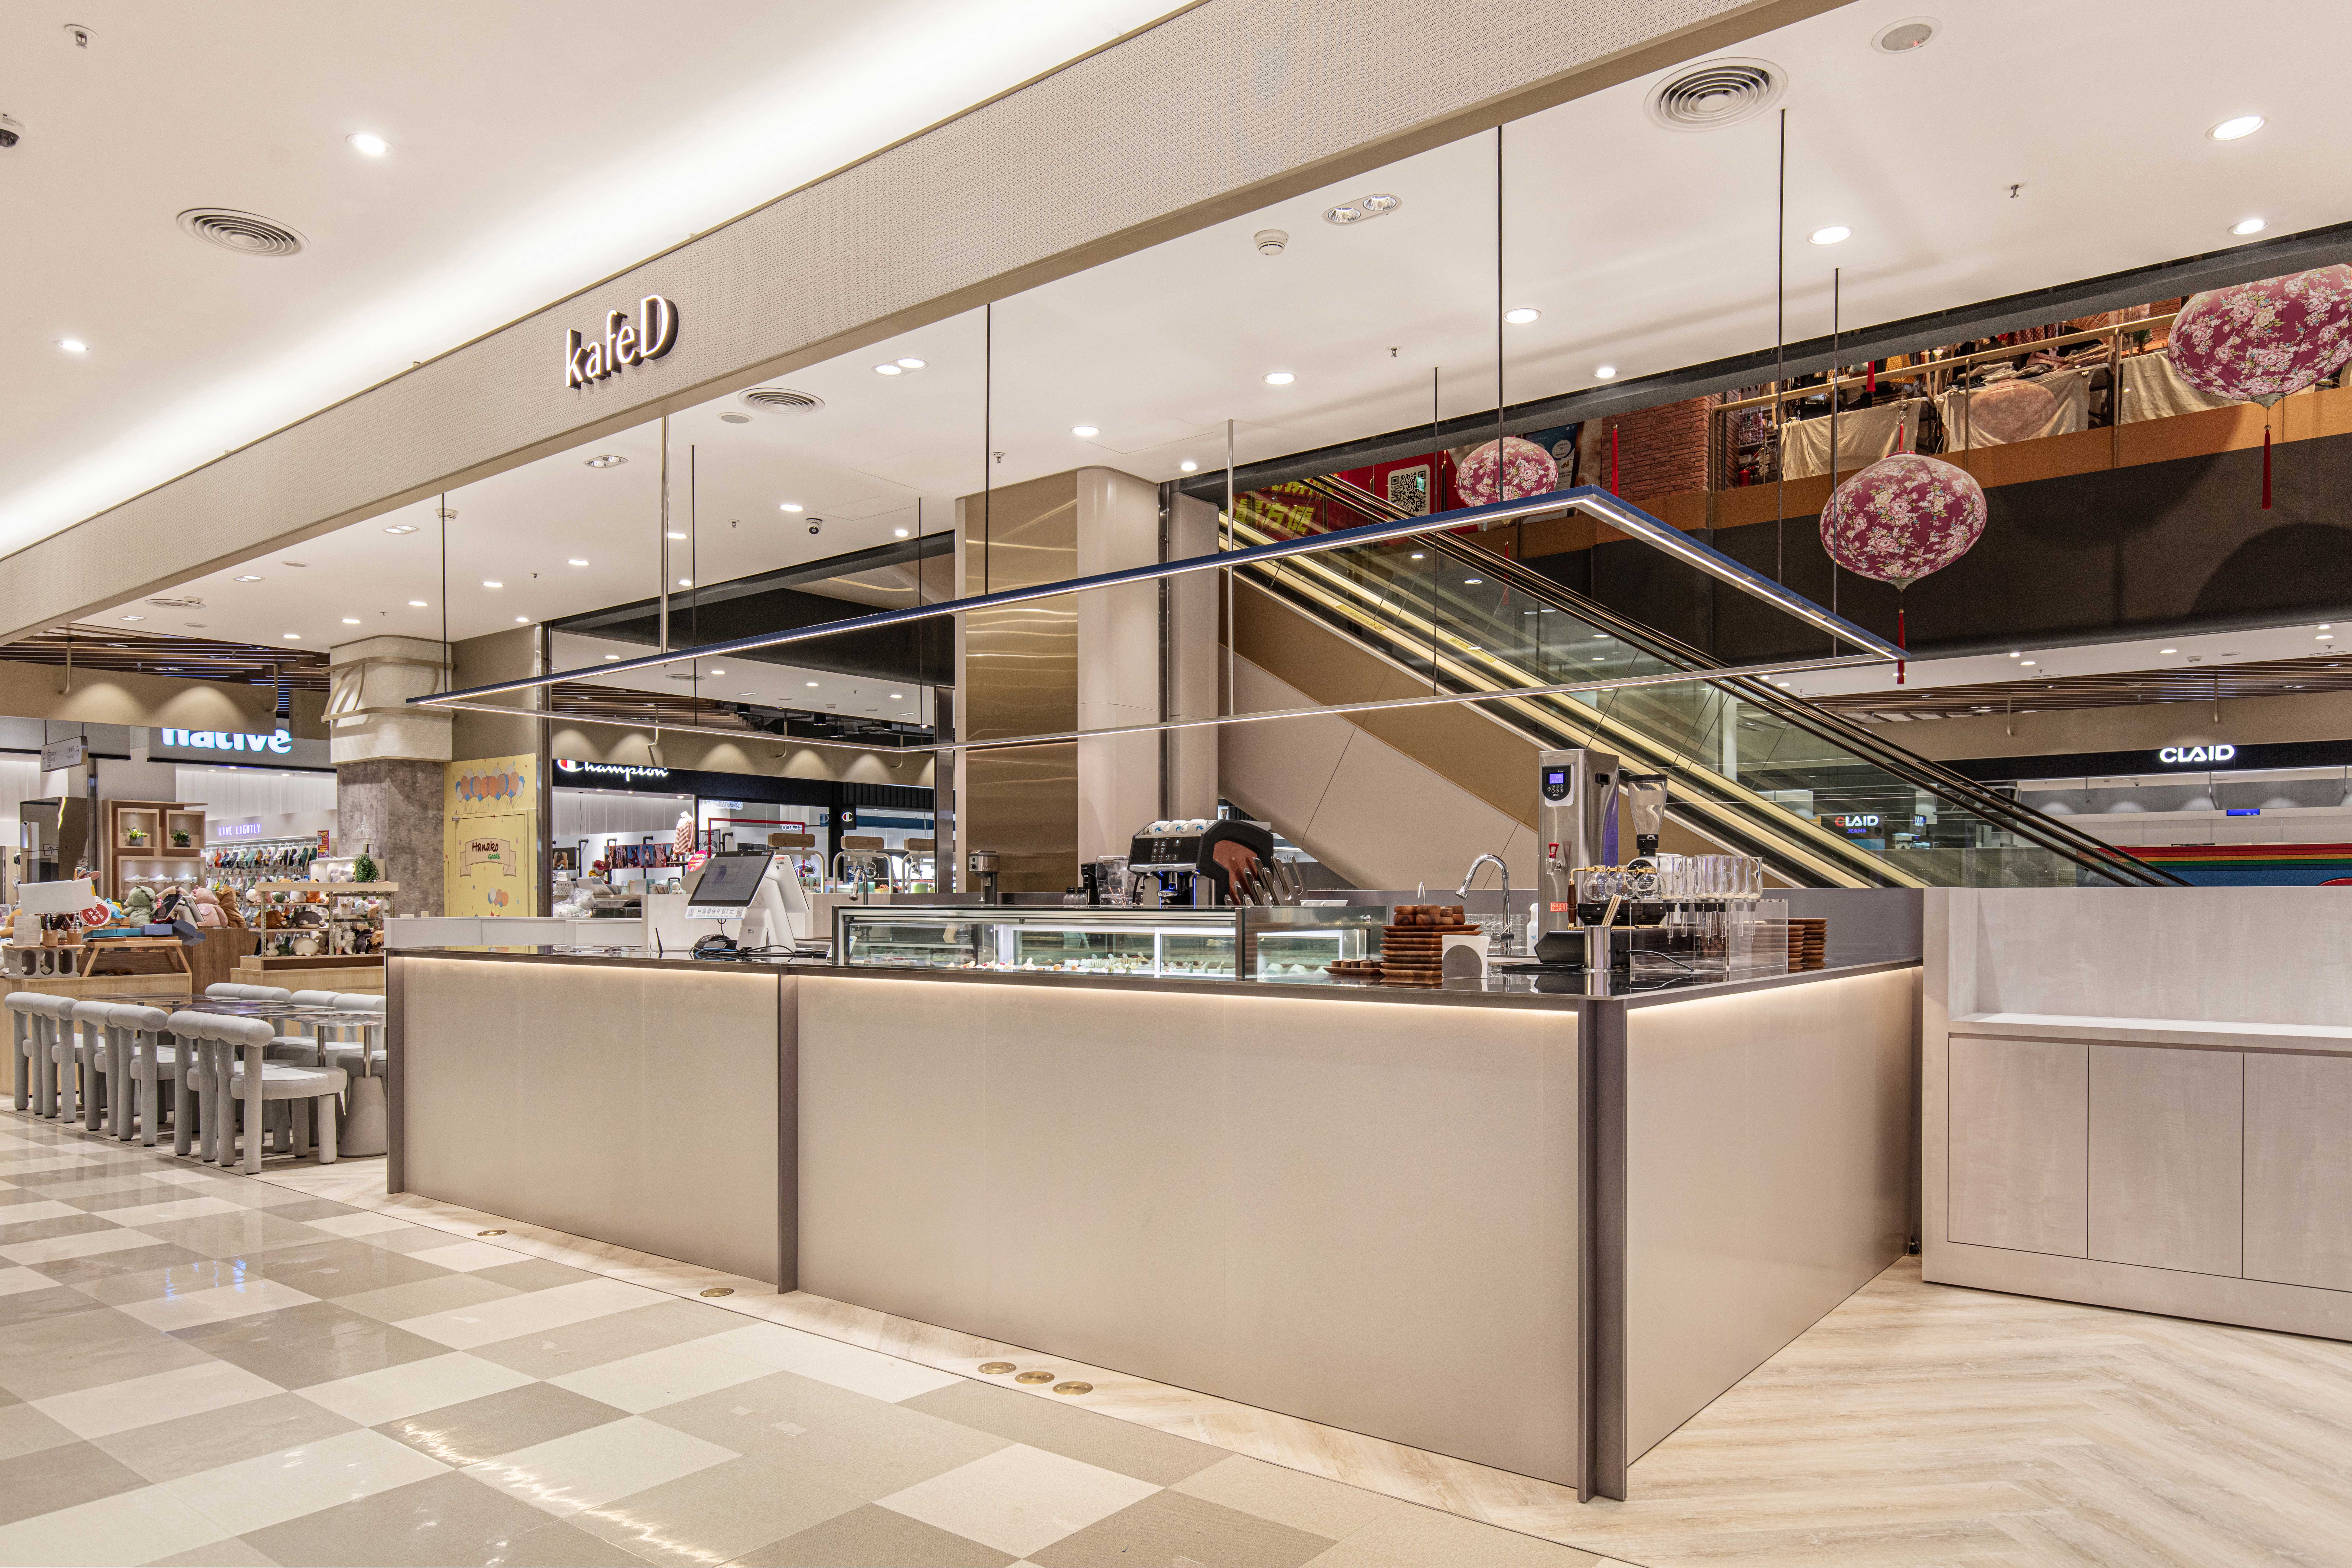 kafeD竹北遠百店空間延續品牌獨特「包浩斯」簡約設計風格，更以「循環設計」理念出發，融入環境友善元素。